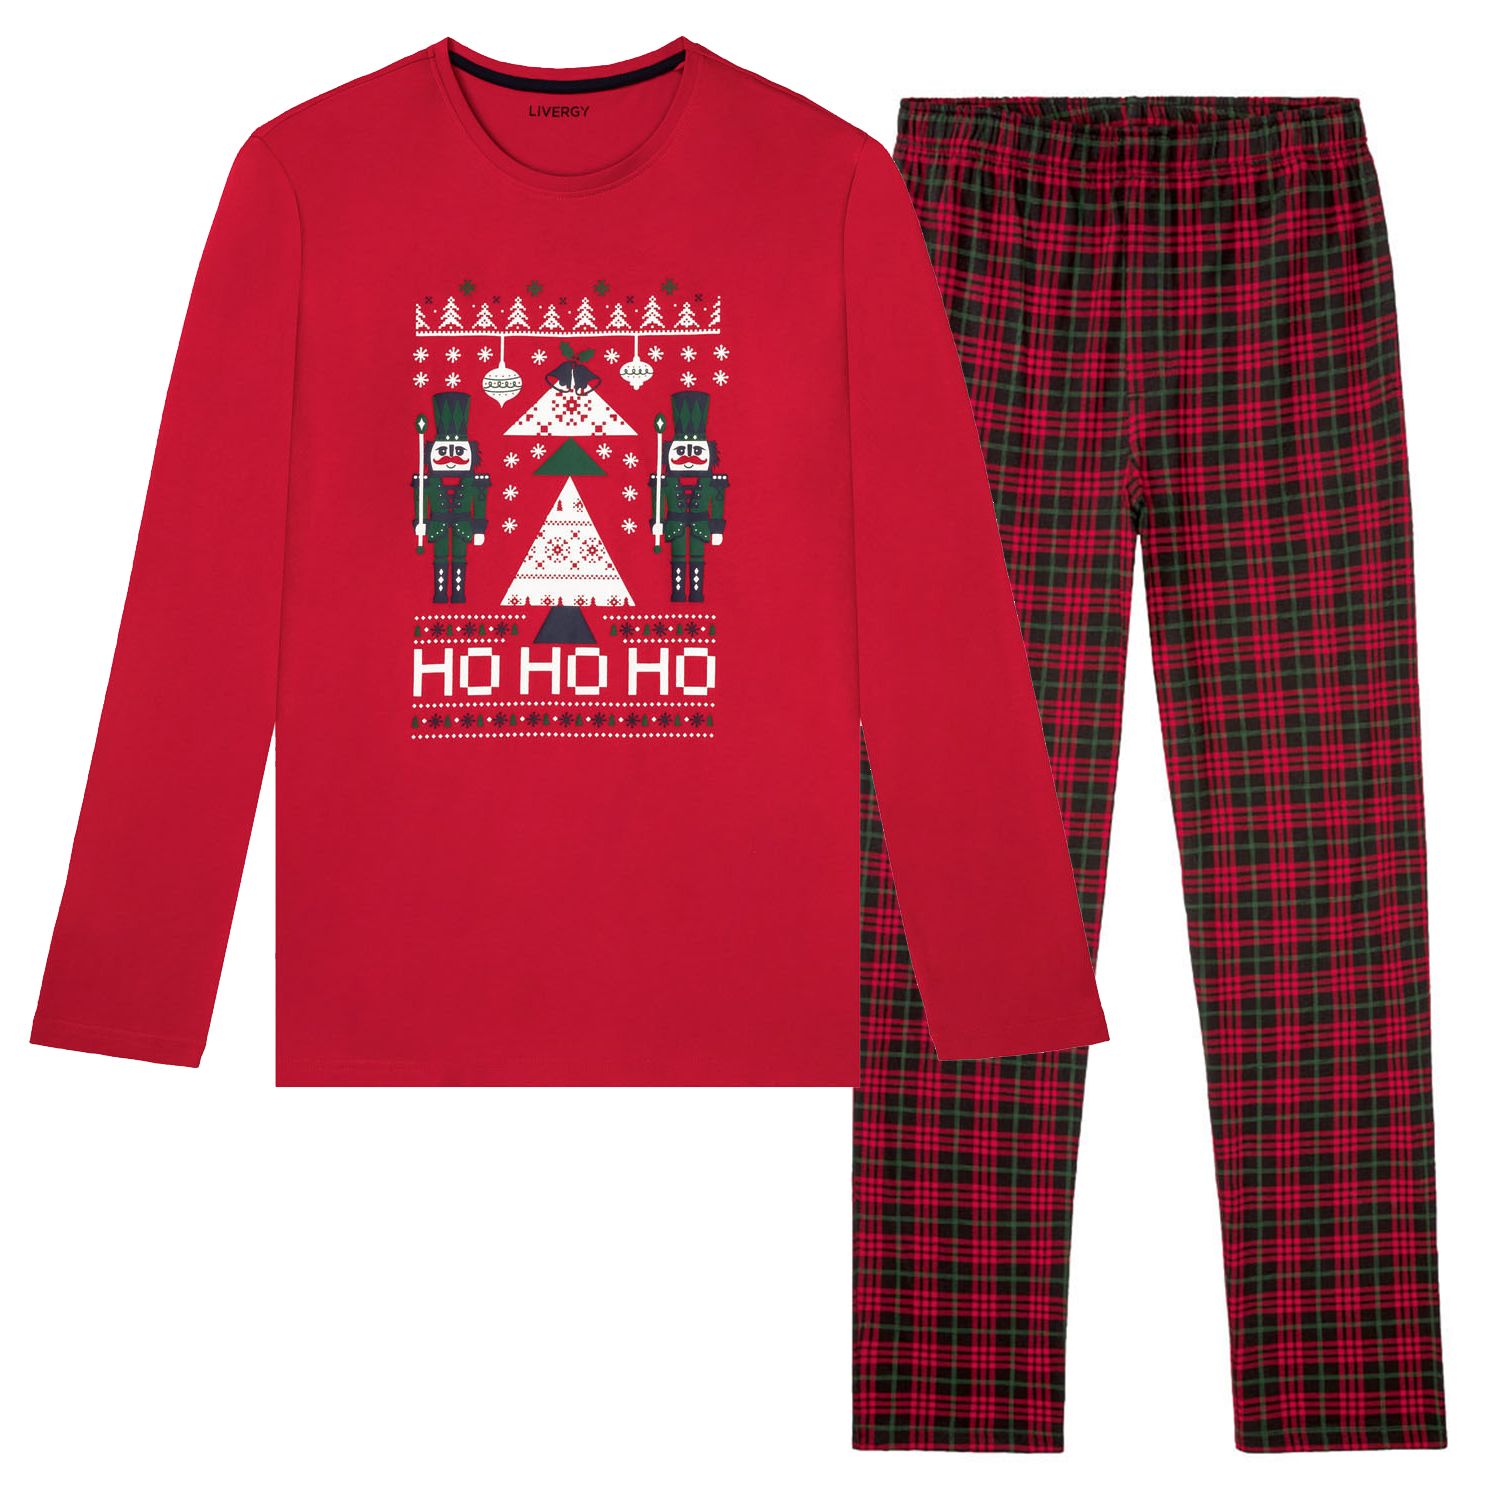 ست تی شرت و شلوار مردانه لیورجی مدل کریسمسی کد HUHU2022 رنگ قرمز